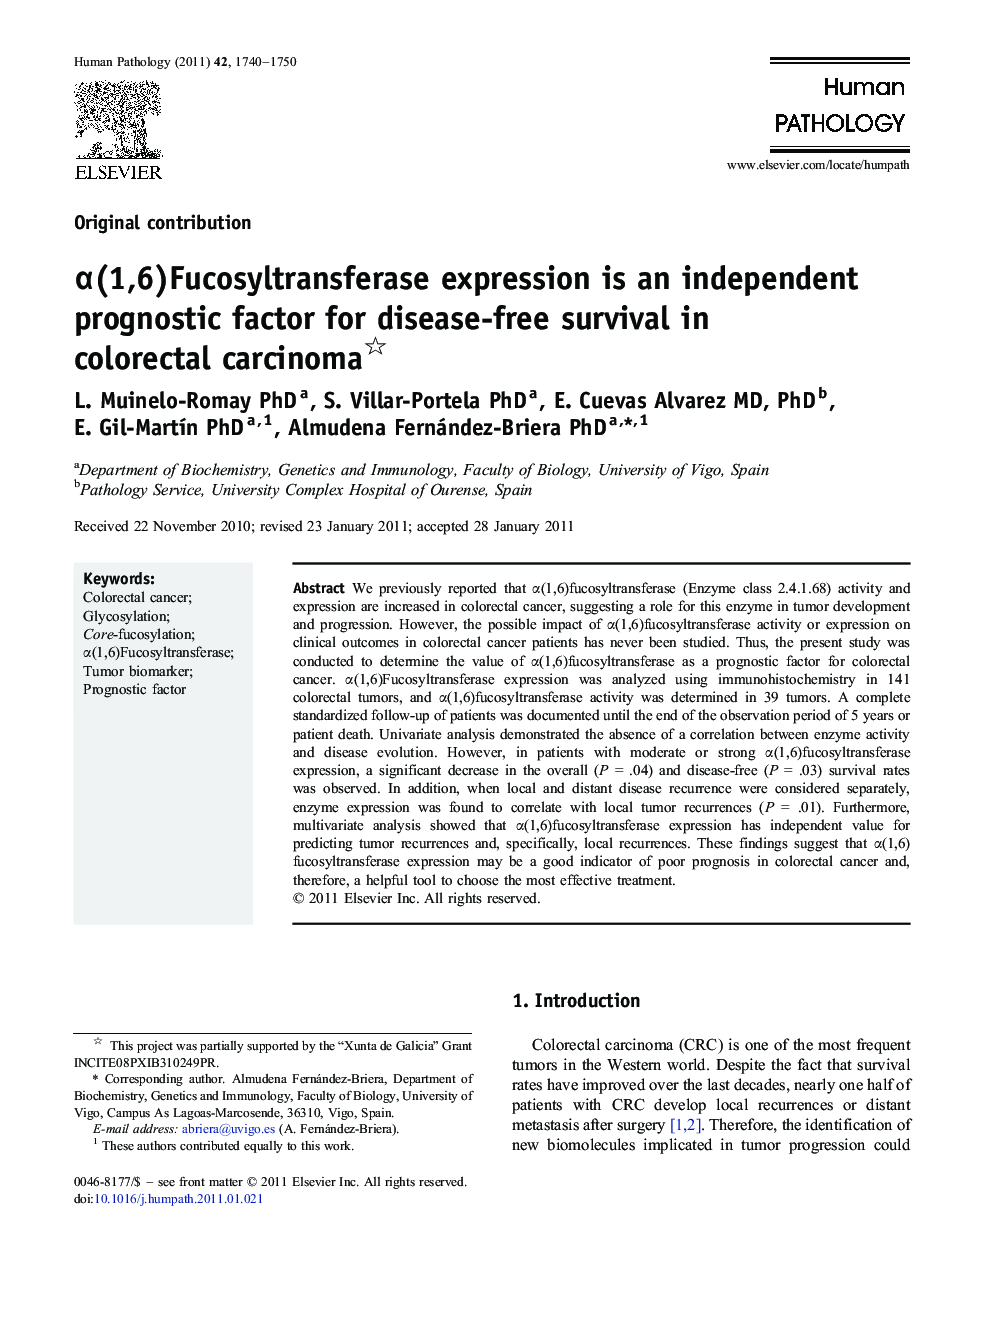 α(1,6)Fucosyltransferase expression is an independent prognostic factor for disease-free survival in colorectal carcinoma 